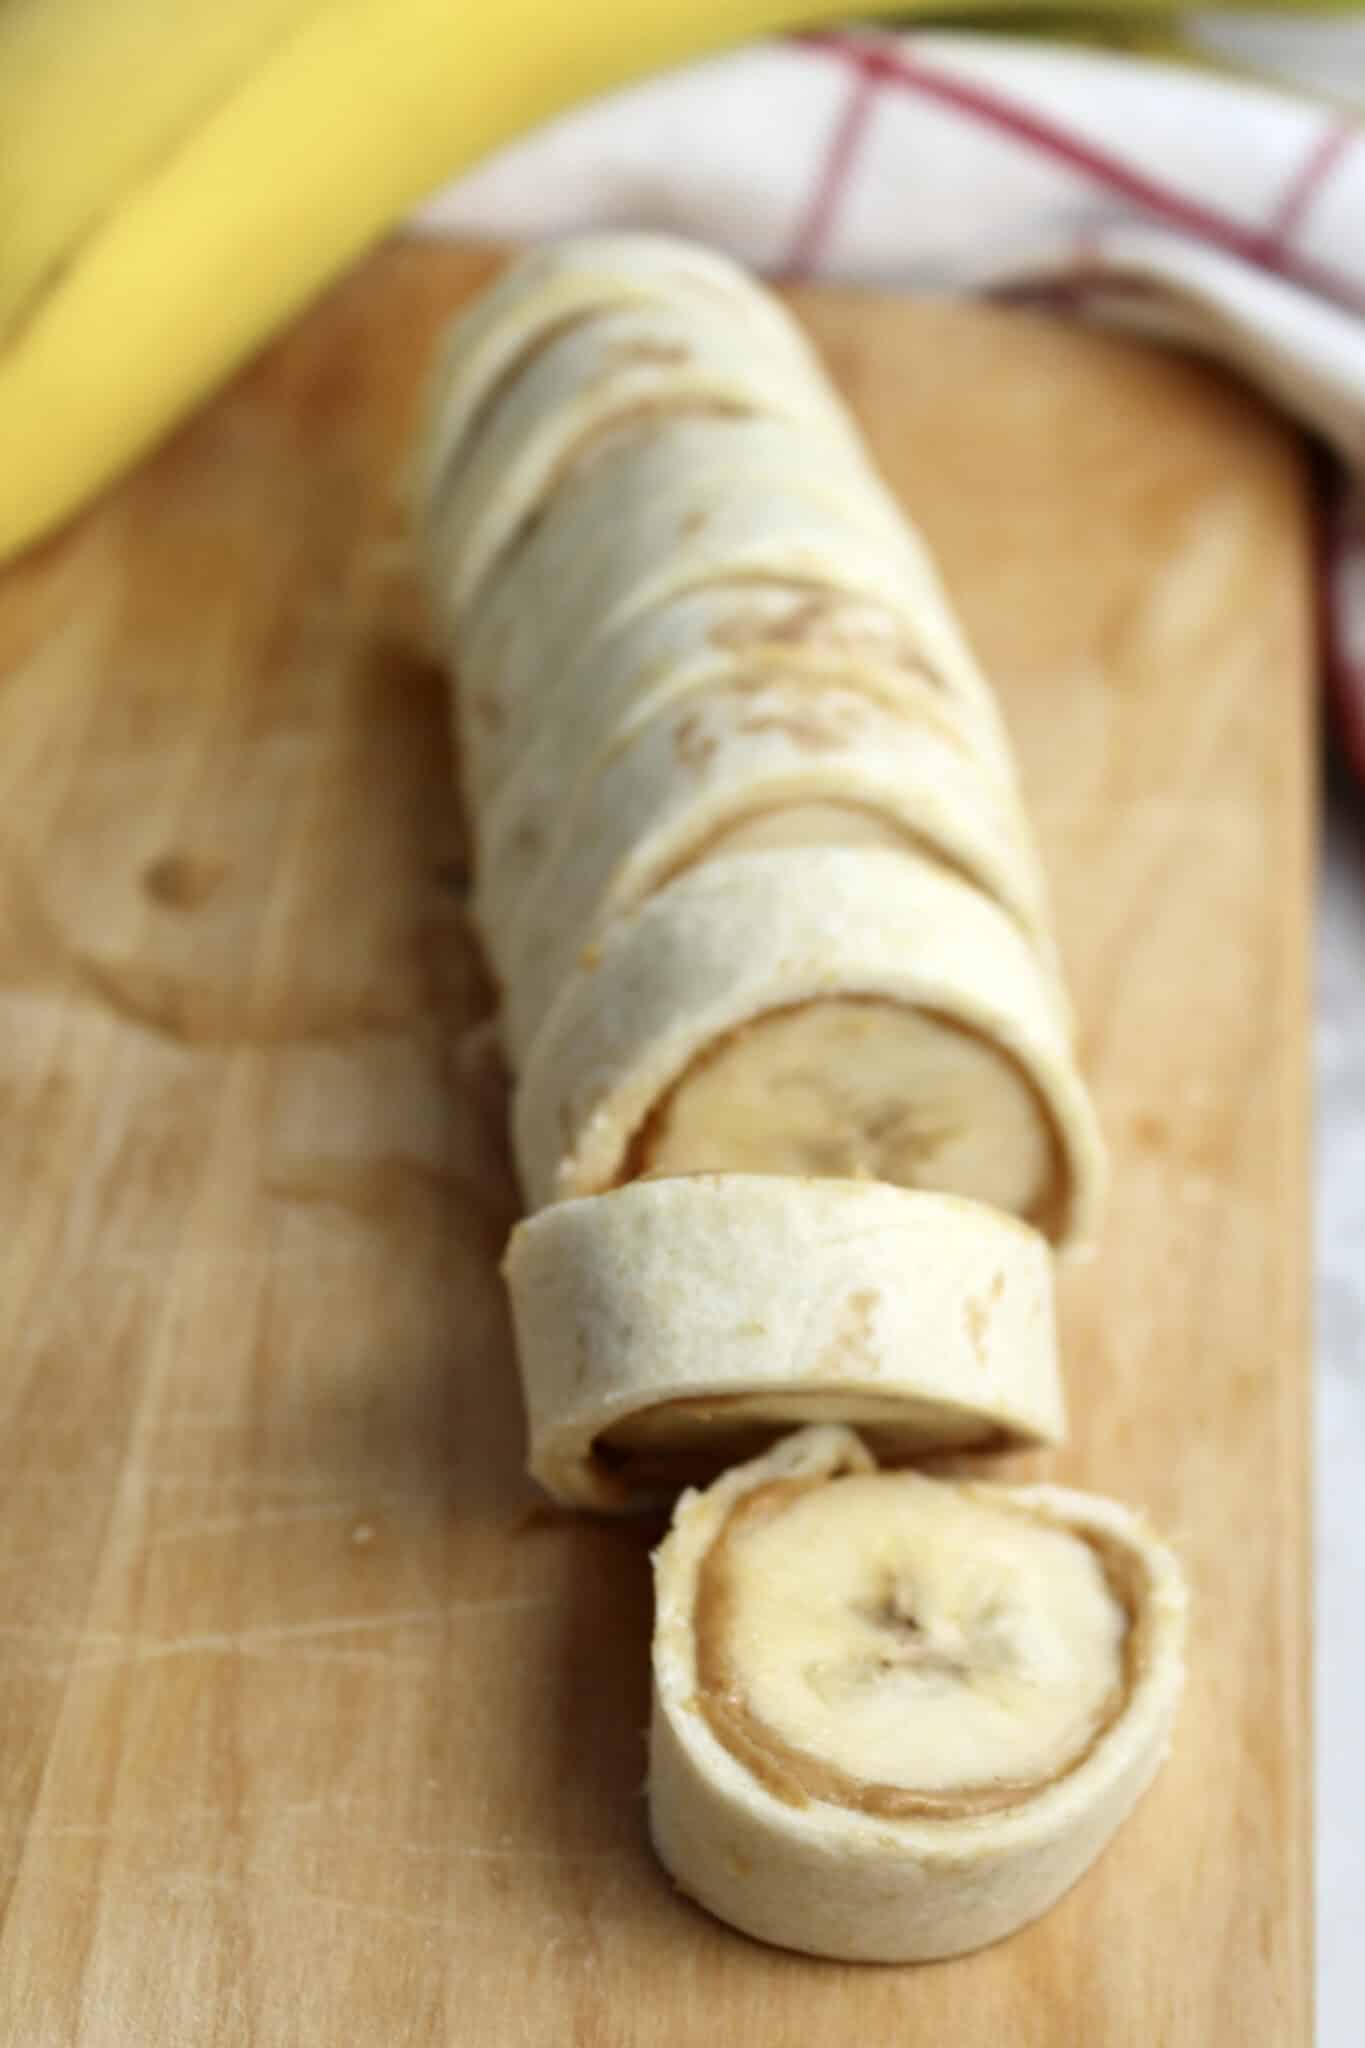 sliced peanut butter and tortilla rolls